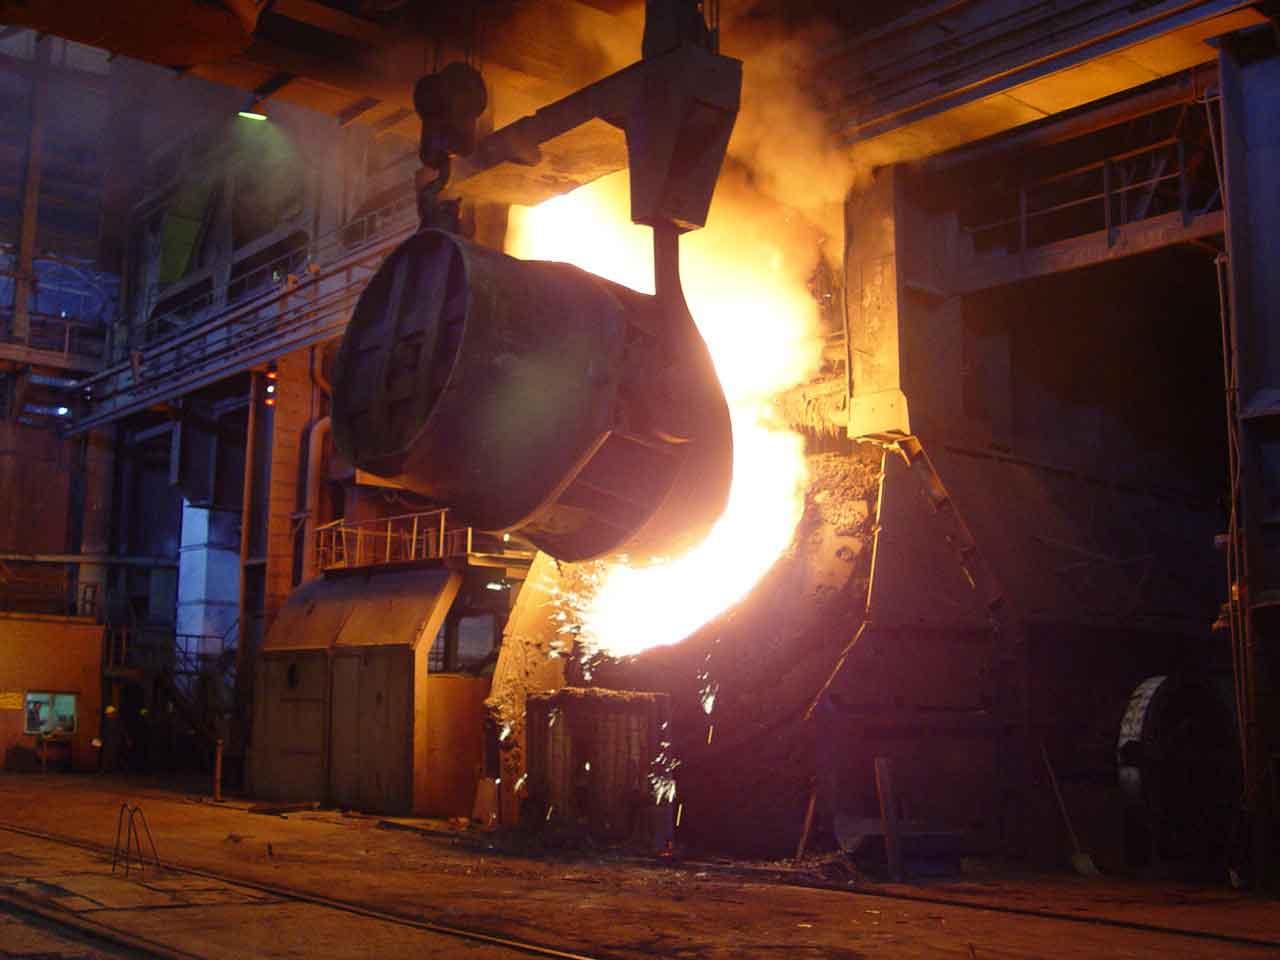 Gas Curbs Doom Steel Industry in Iran